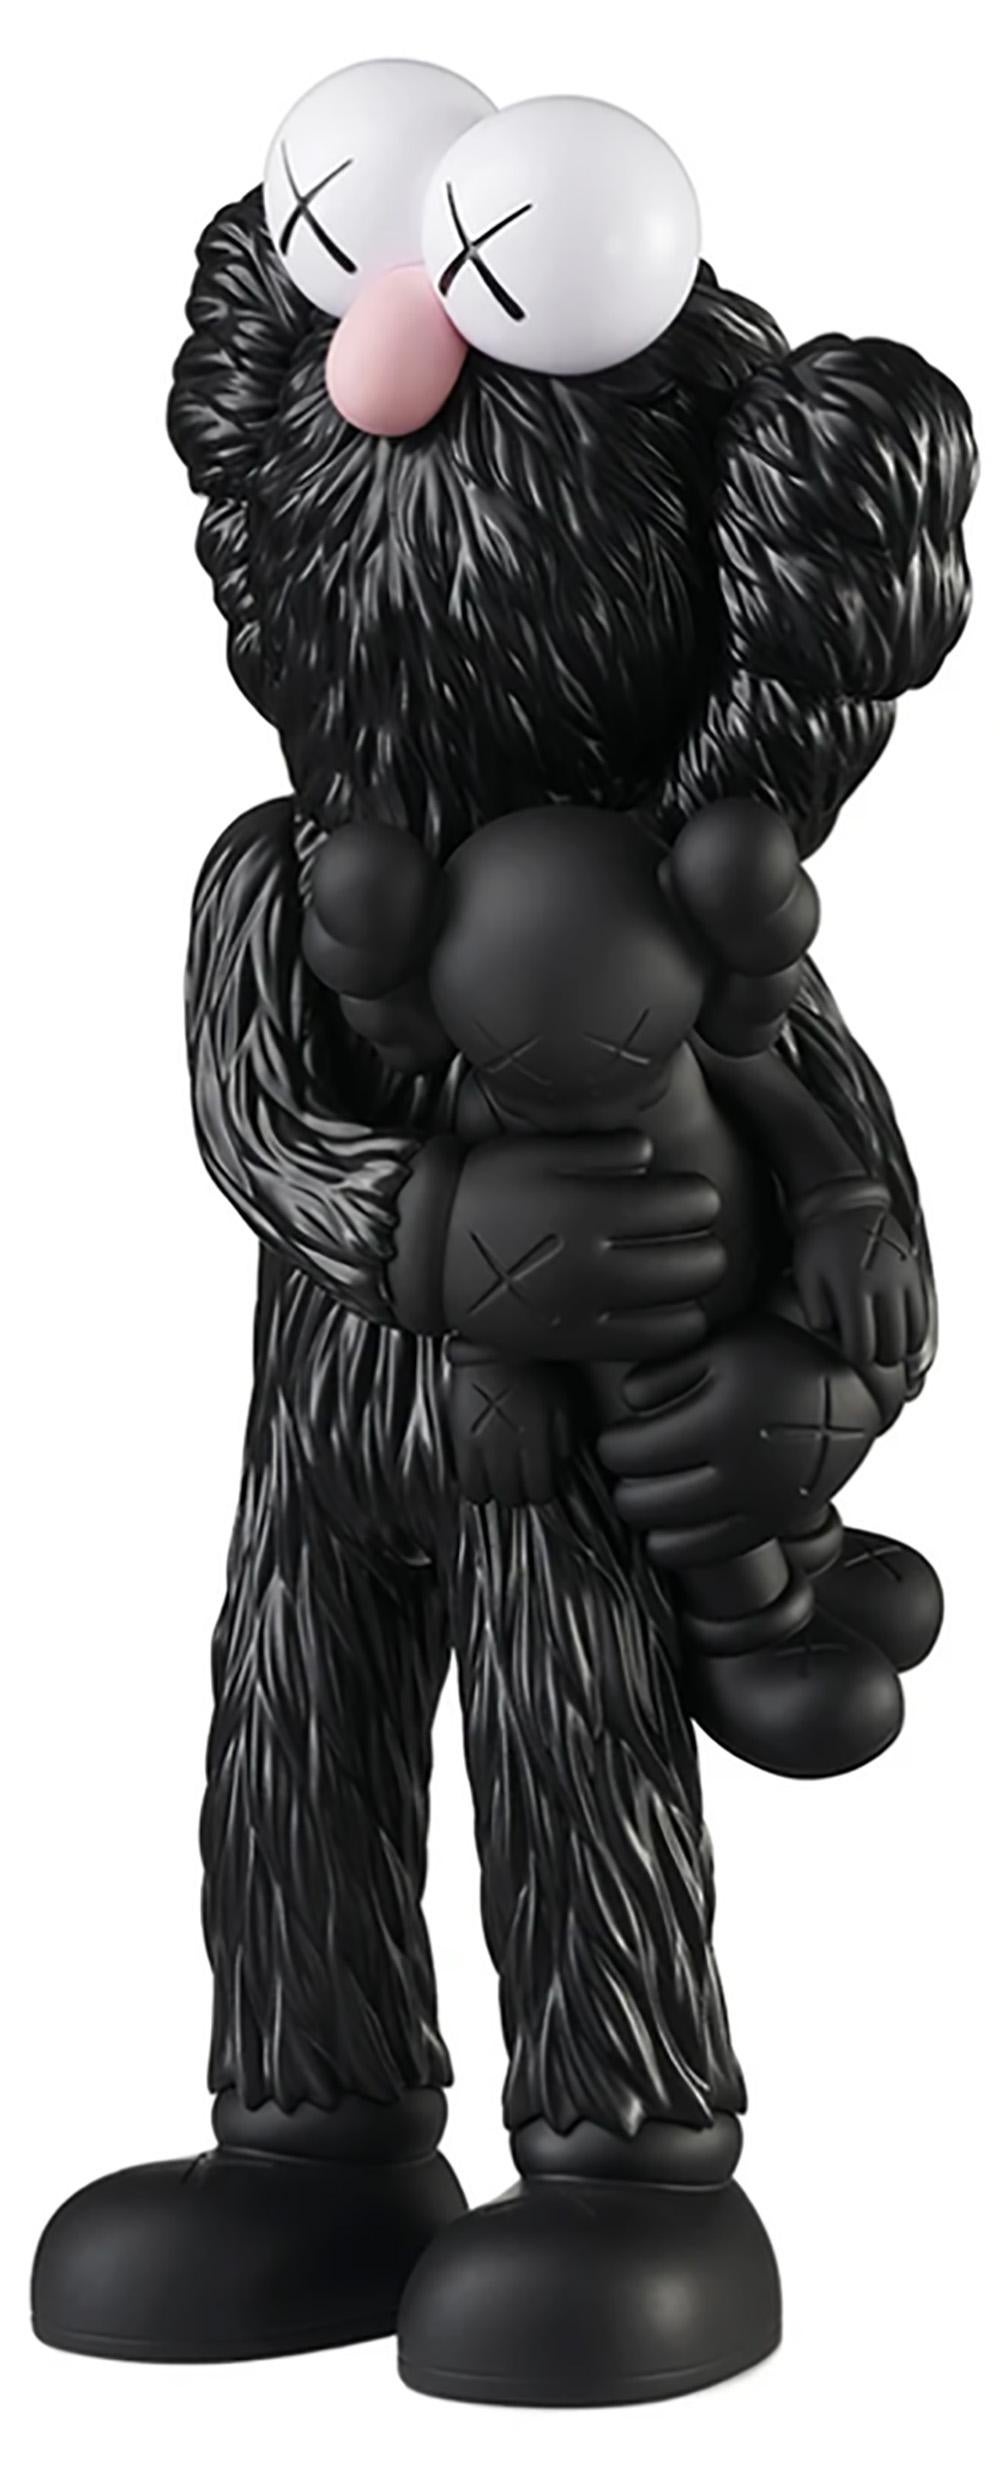 KAWS TAKE (Schwarz) neu & ungeöffnet in der Originalverpackung. 
Eine herausragende KAWS Companion-Figur und eine Variante der großformatigen KAWS-Skulptur TAKE - ein Highlight der Ausstellung "KAWS BLACKOUT" in der Skarstedt Gallery London im Jahr